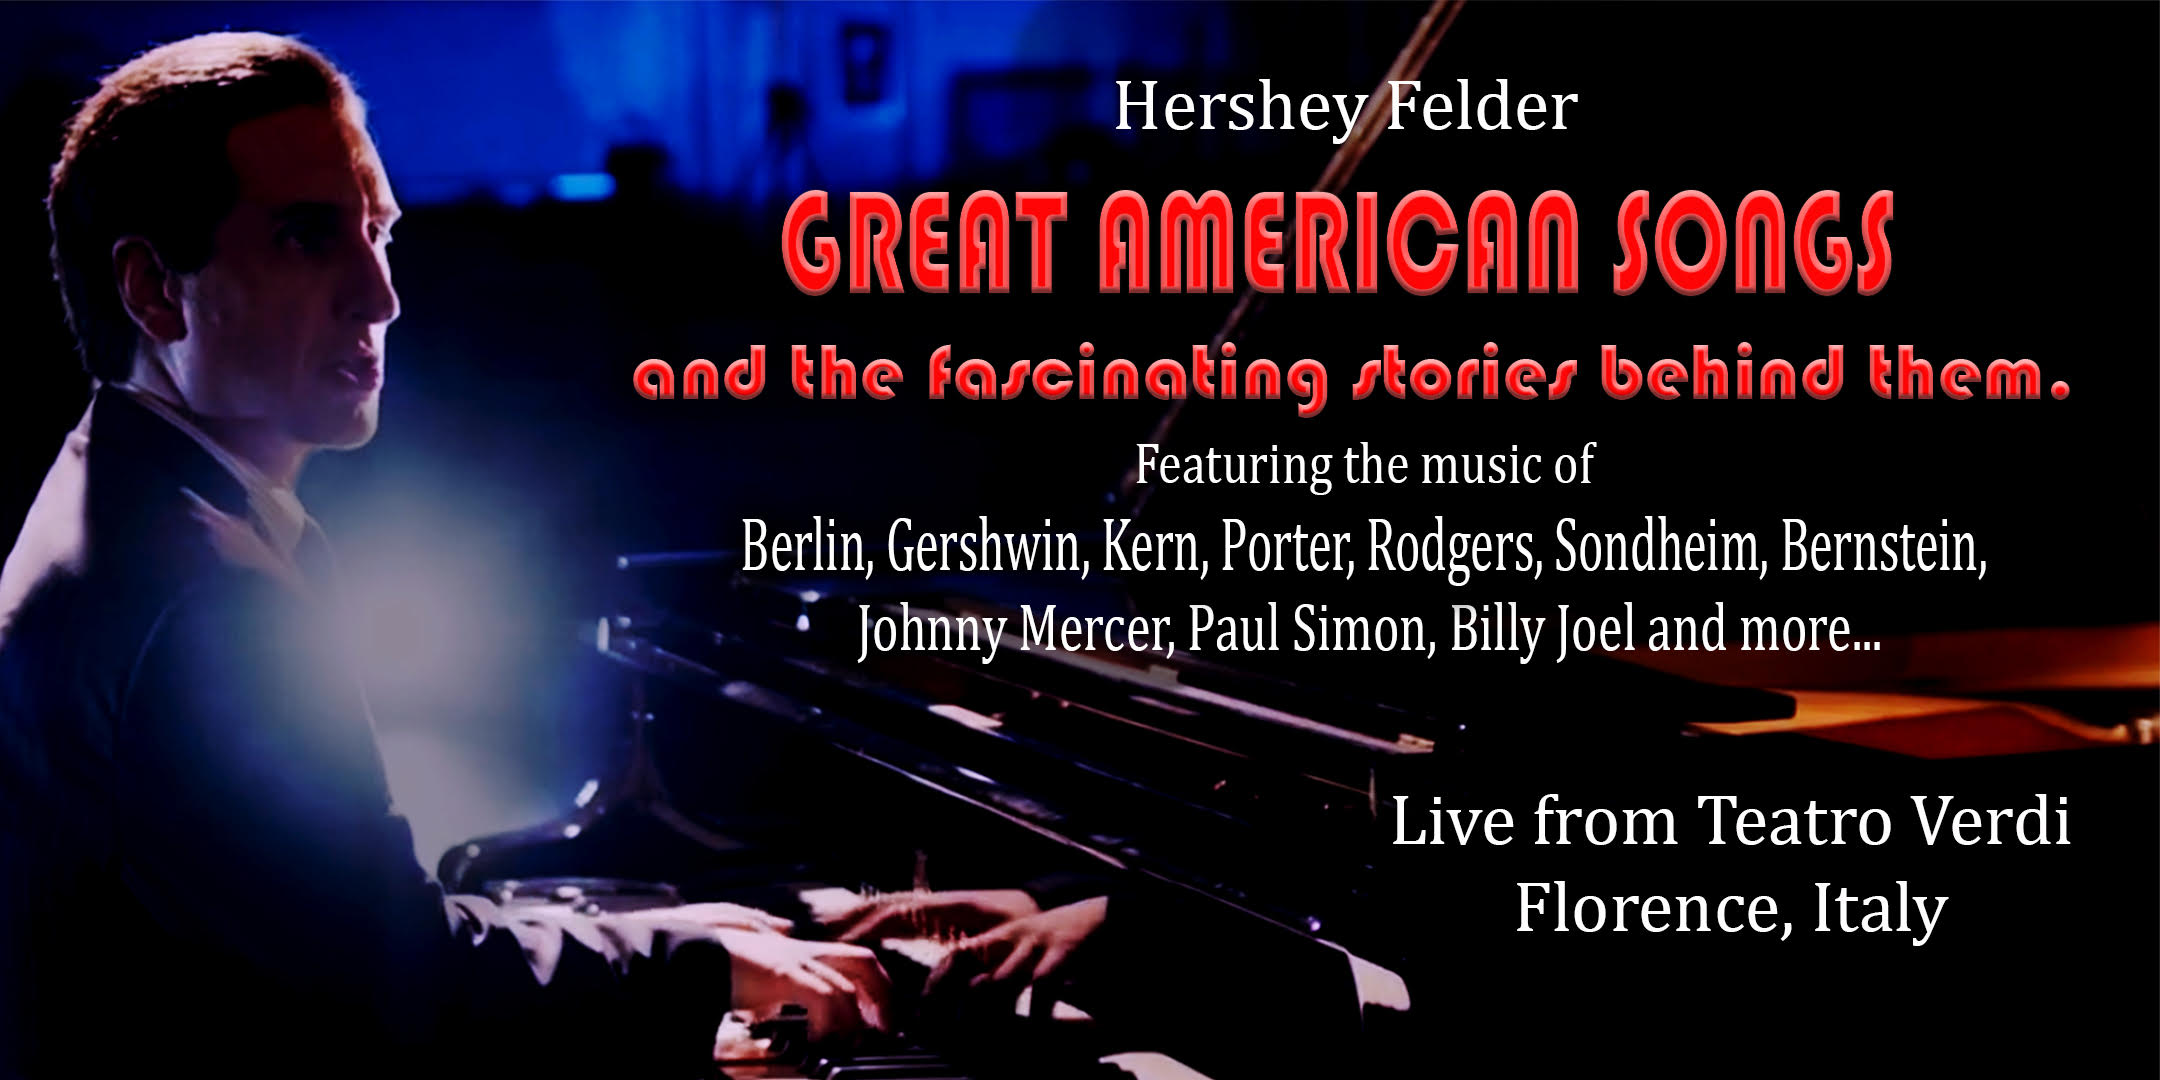 HERSHEY FELDER'S GREAT AMERICAN SONGS